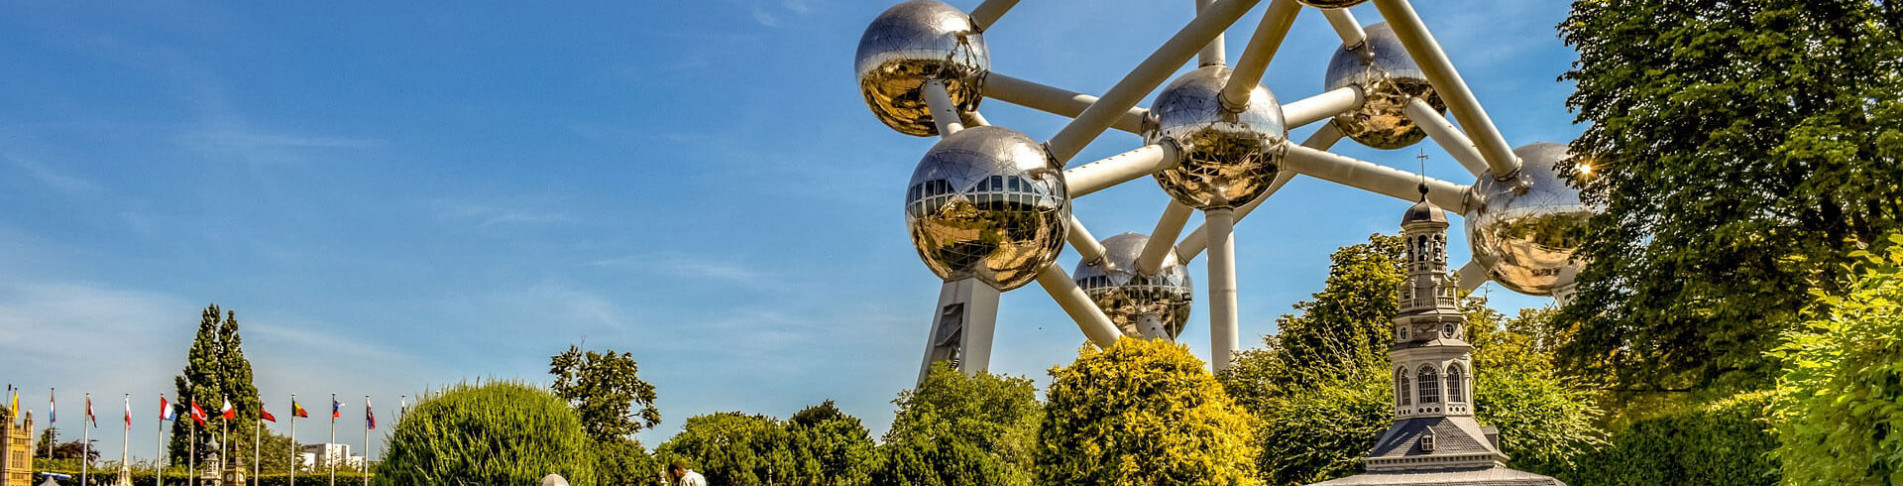 Besuch beim Atomium während einer Städtereise in Brüssel